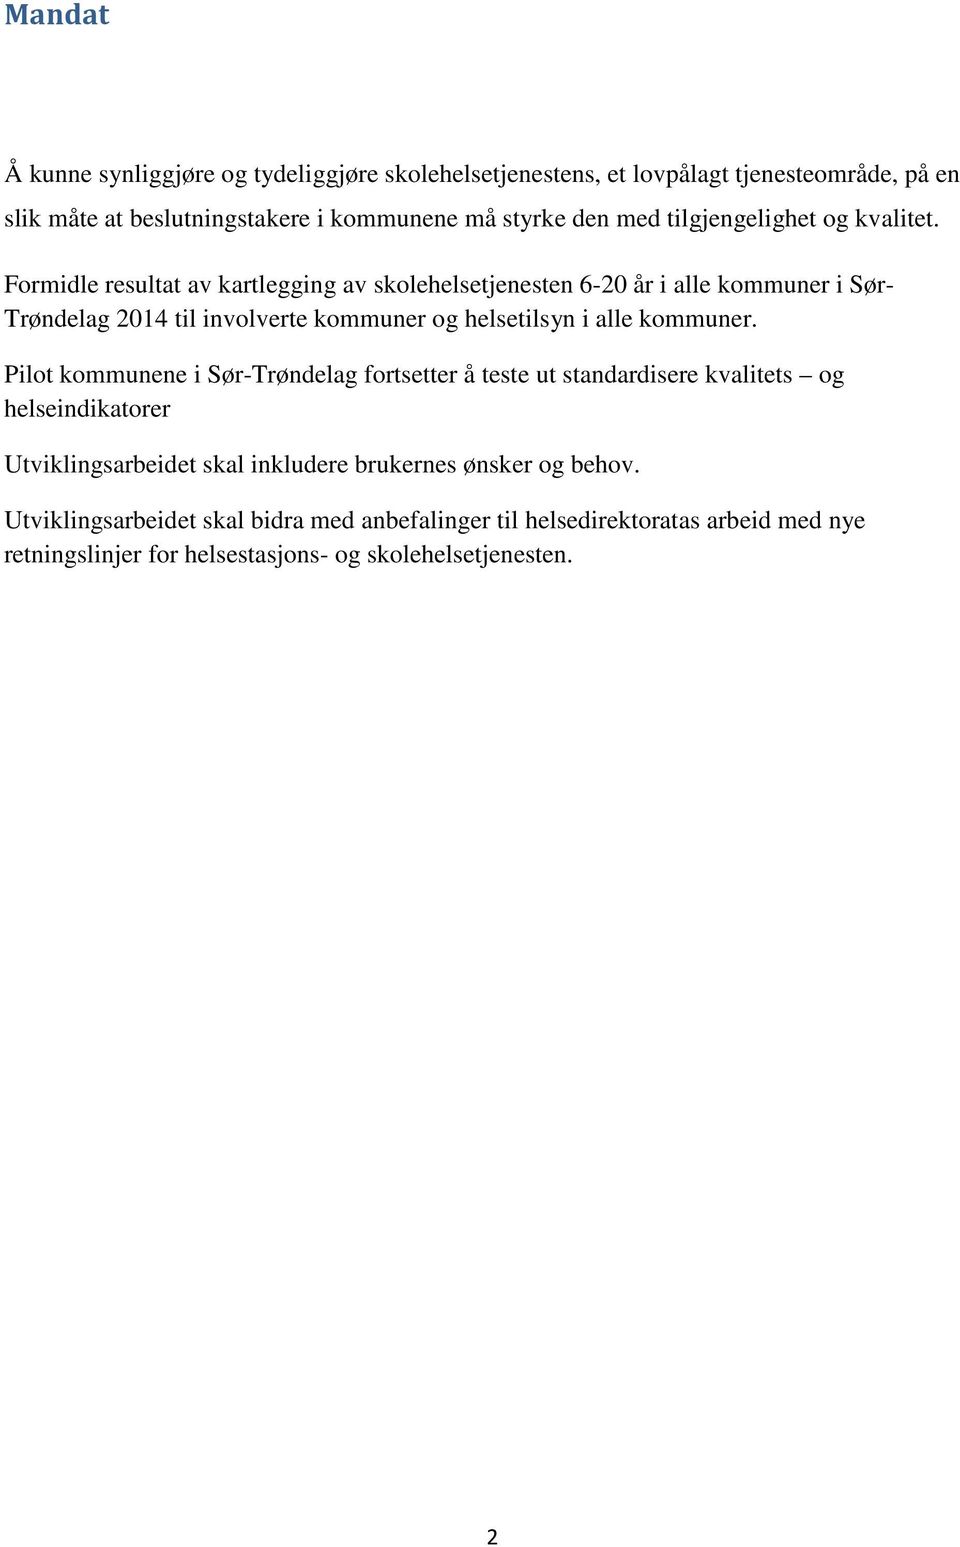 Formidle resultat av kartlegging av skolehelsetjenesten 6-20 år i alle kommuner i Sør- Trøndelag 2014 til involverte kommuner og helsetilsyn i alle kommuner.